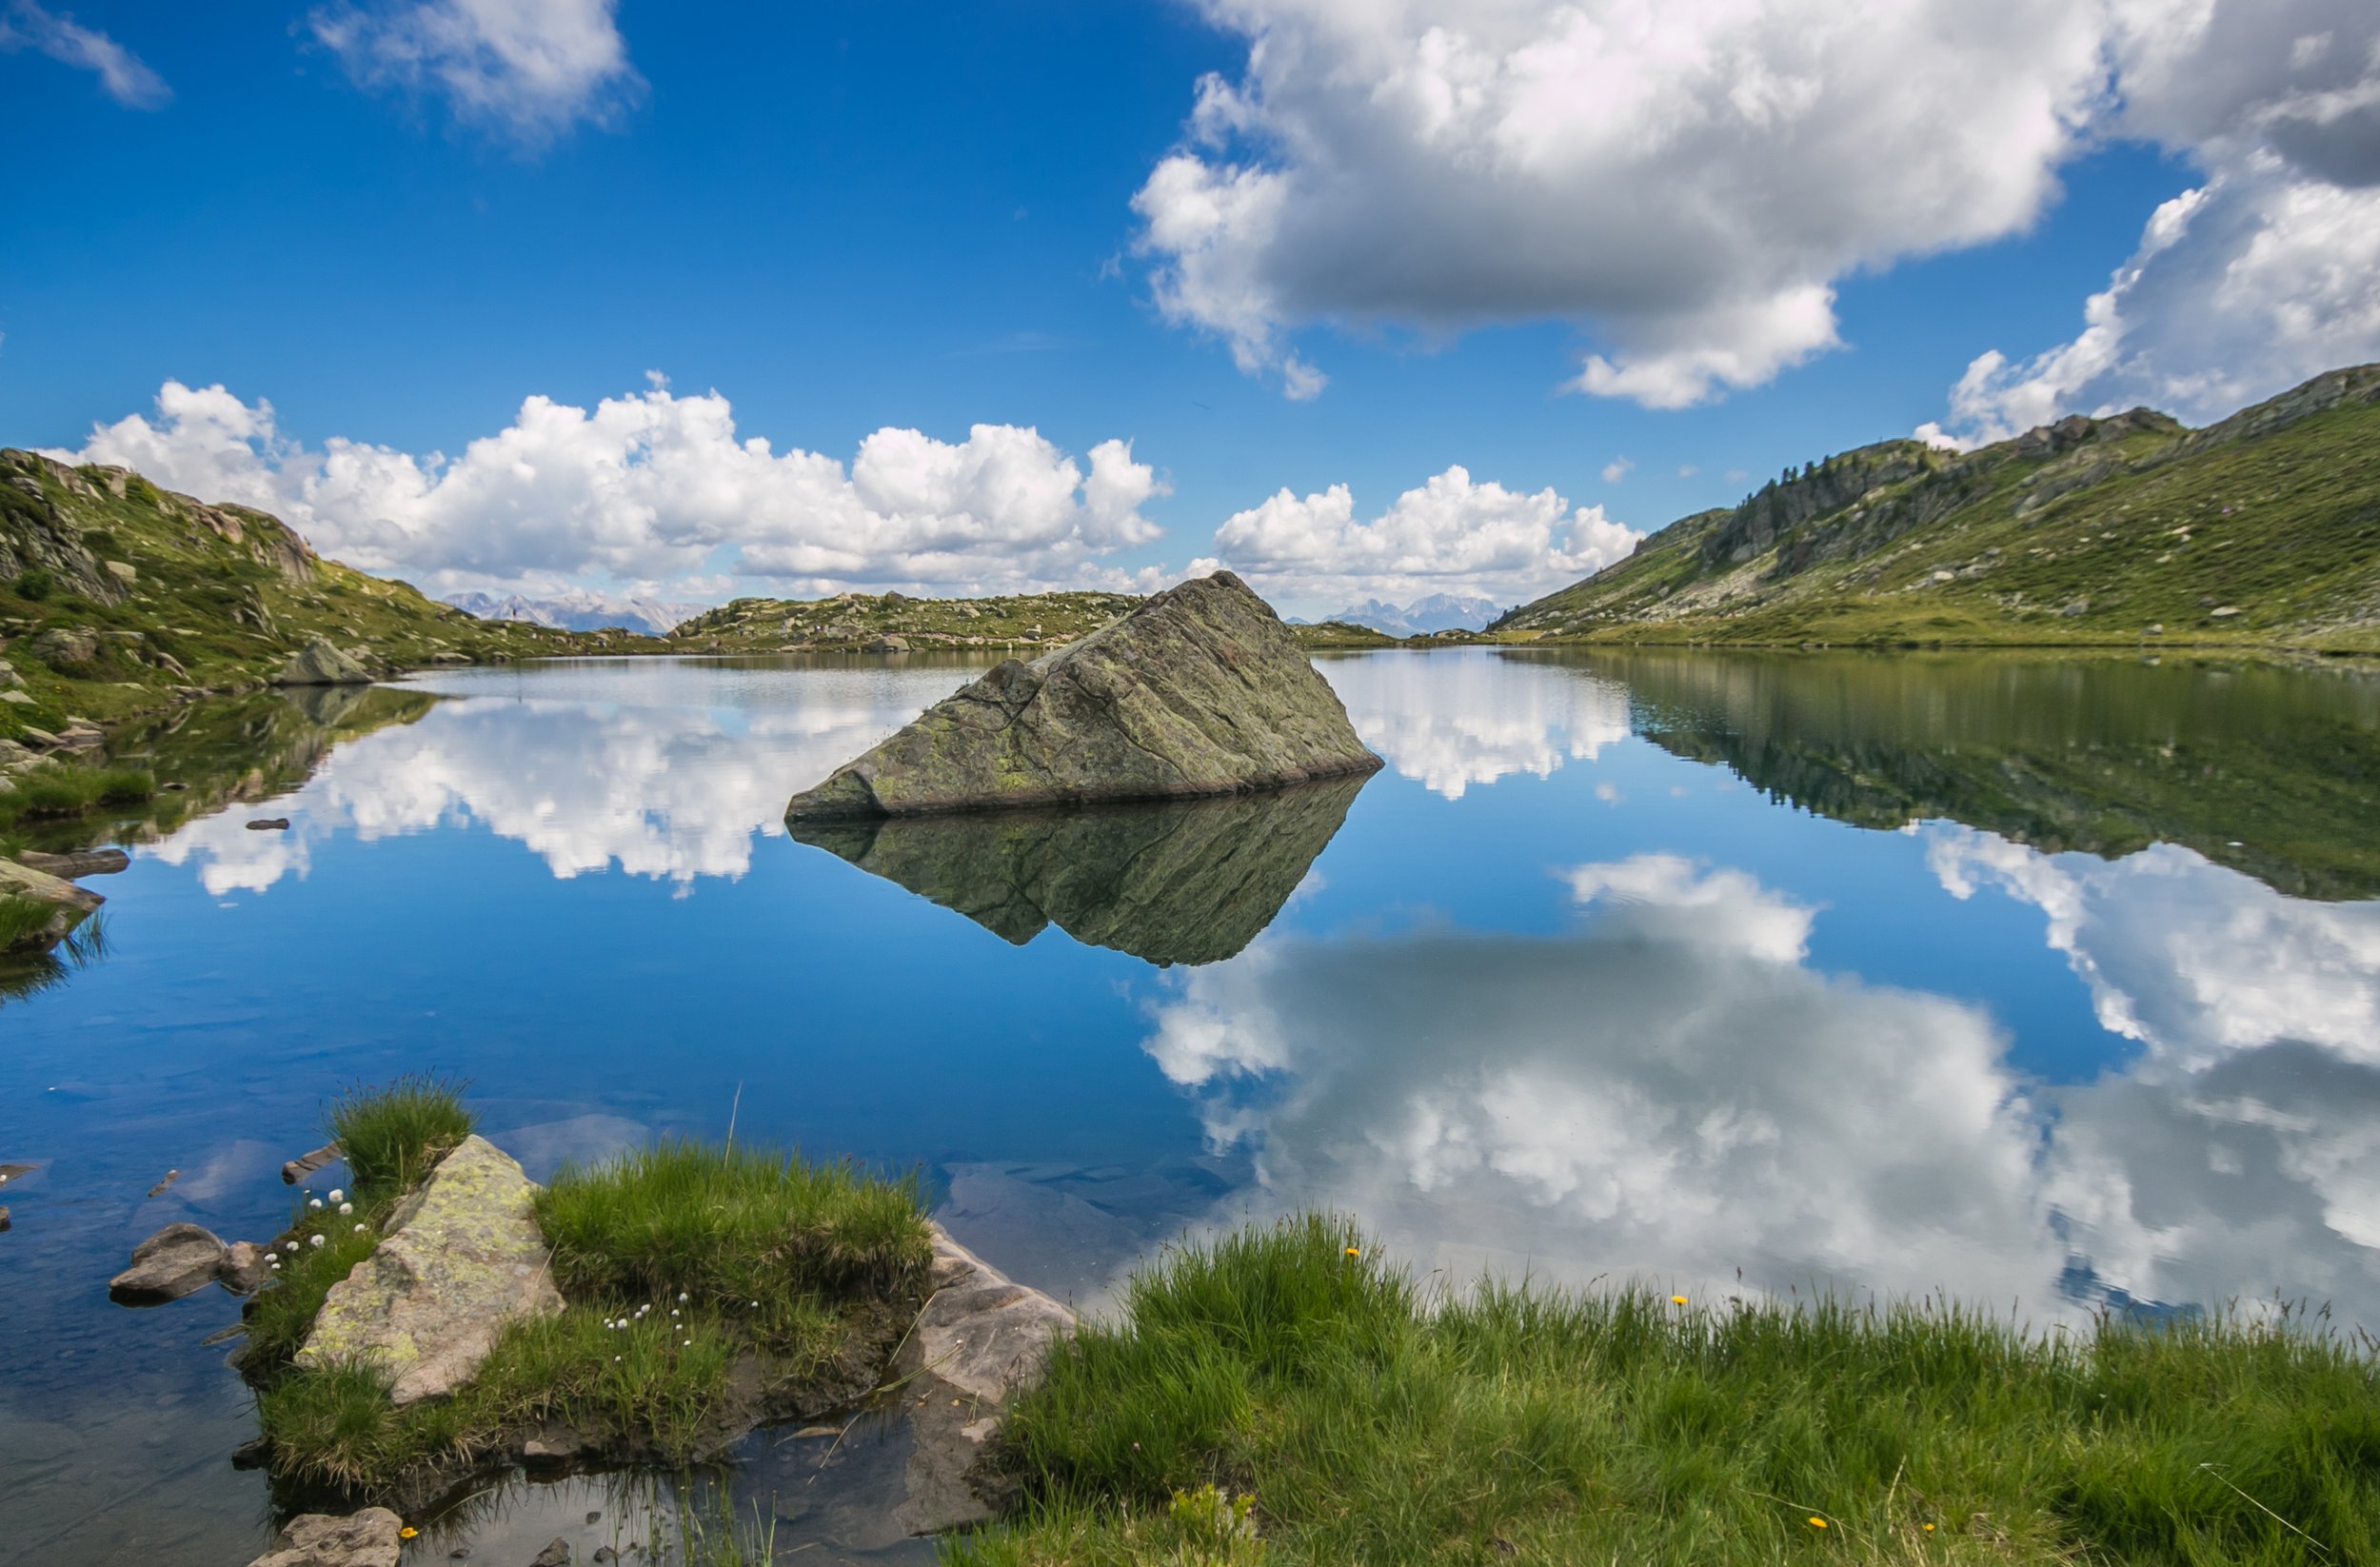 dreamstime_l_191685677 Bombasel lake in the Cermis alp Val di Fiemme by E Bistocchi.jpg